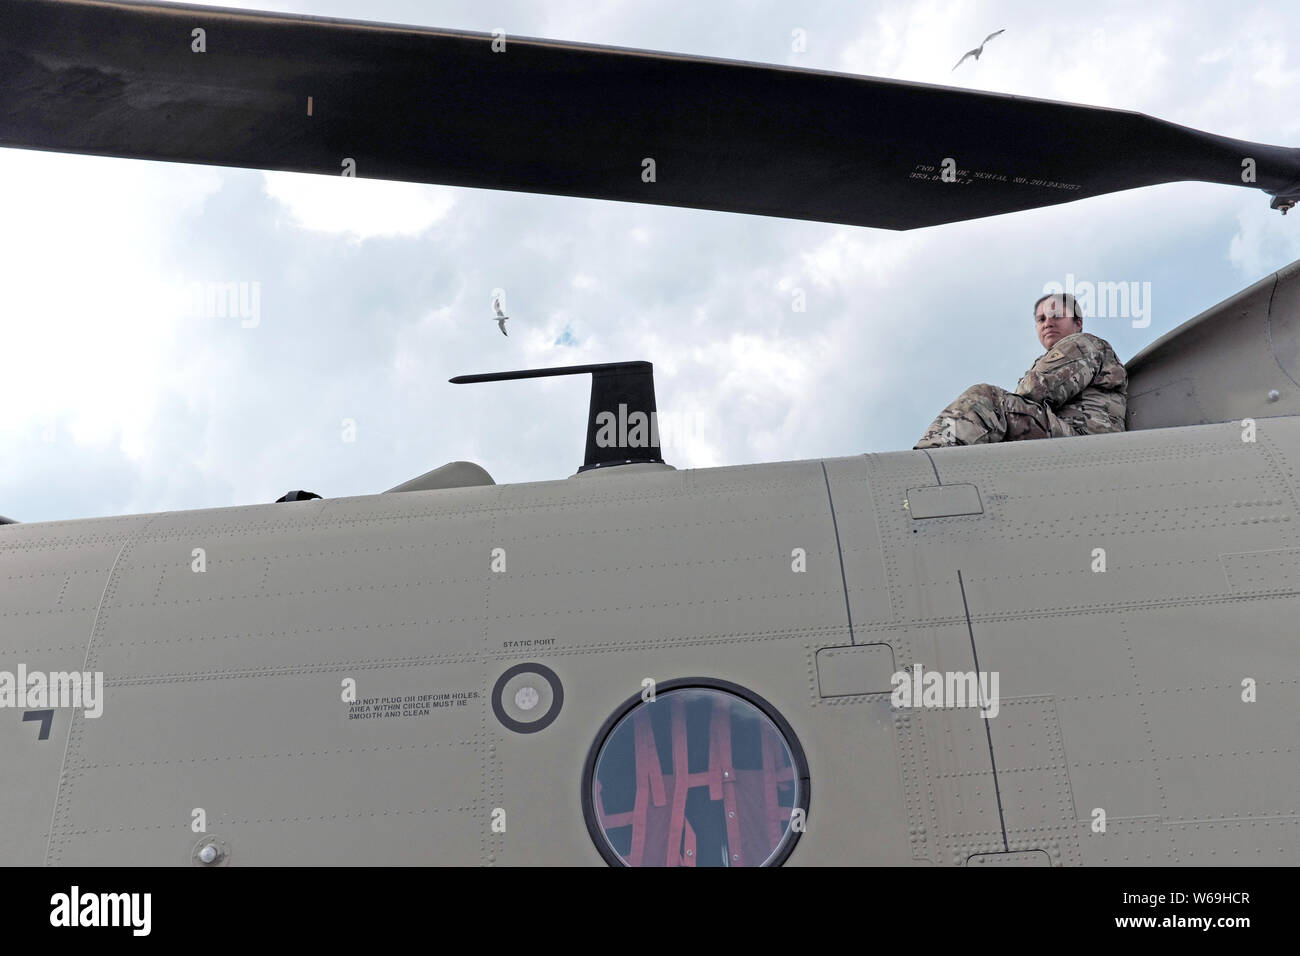 La femme de l'armée américaine est assise au sommet d'un avion de l'armée de terre des États-Unis au Cleveland National Air Show à Cleveland, Ohio, États-Unis. Banque D'Images